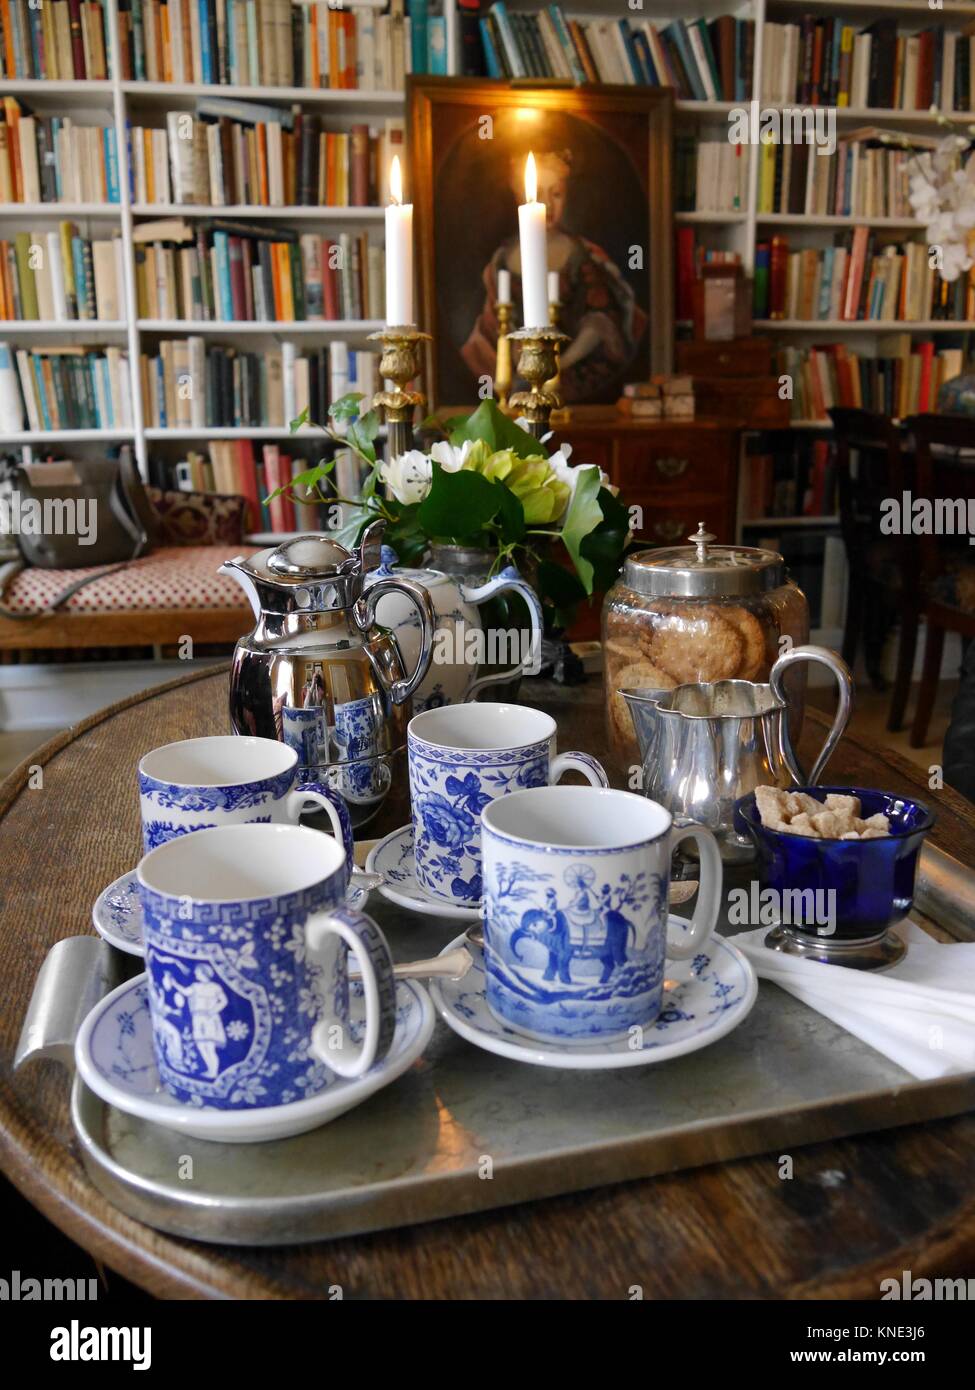 In der Nähe von Kaffee oder Tee mit feinem Porzellan Tassen und Untertassen in der gemütlichen Bibliothek mit Bücherregalen im Hintergrund Stockfoto